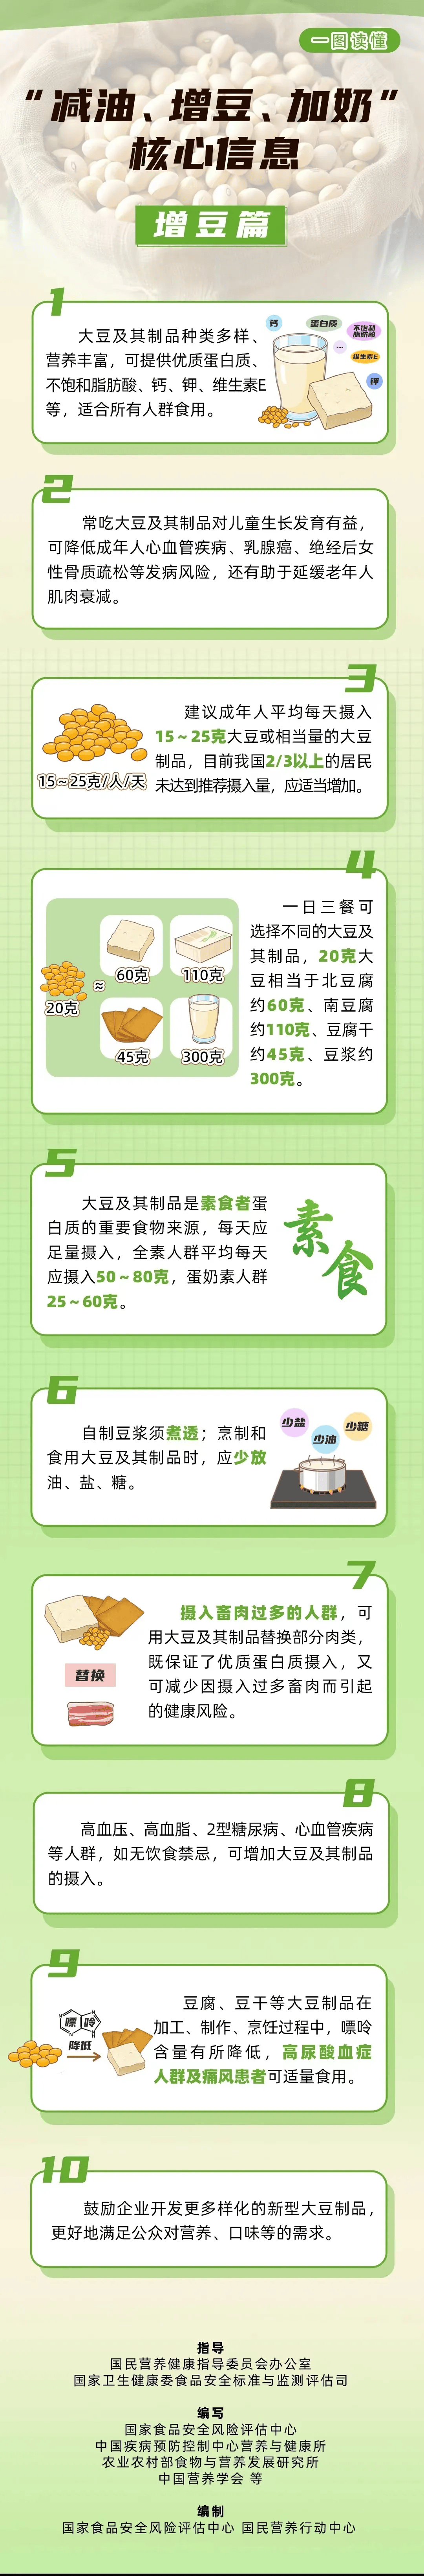 20"中国学生营养日_食物_膳食_幼儿